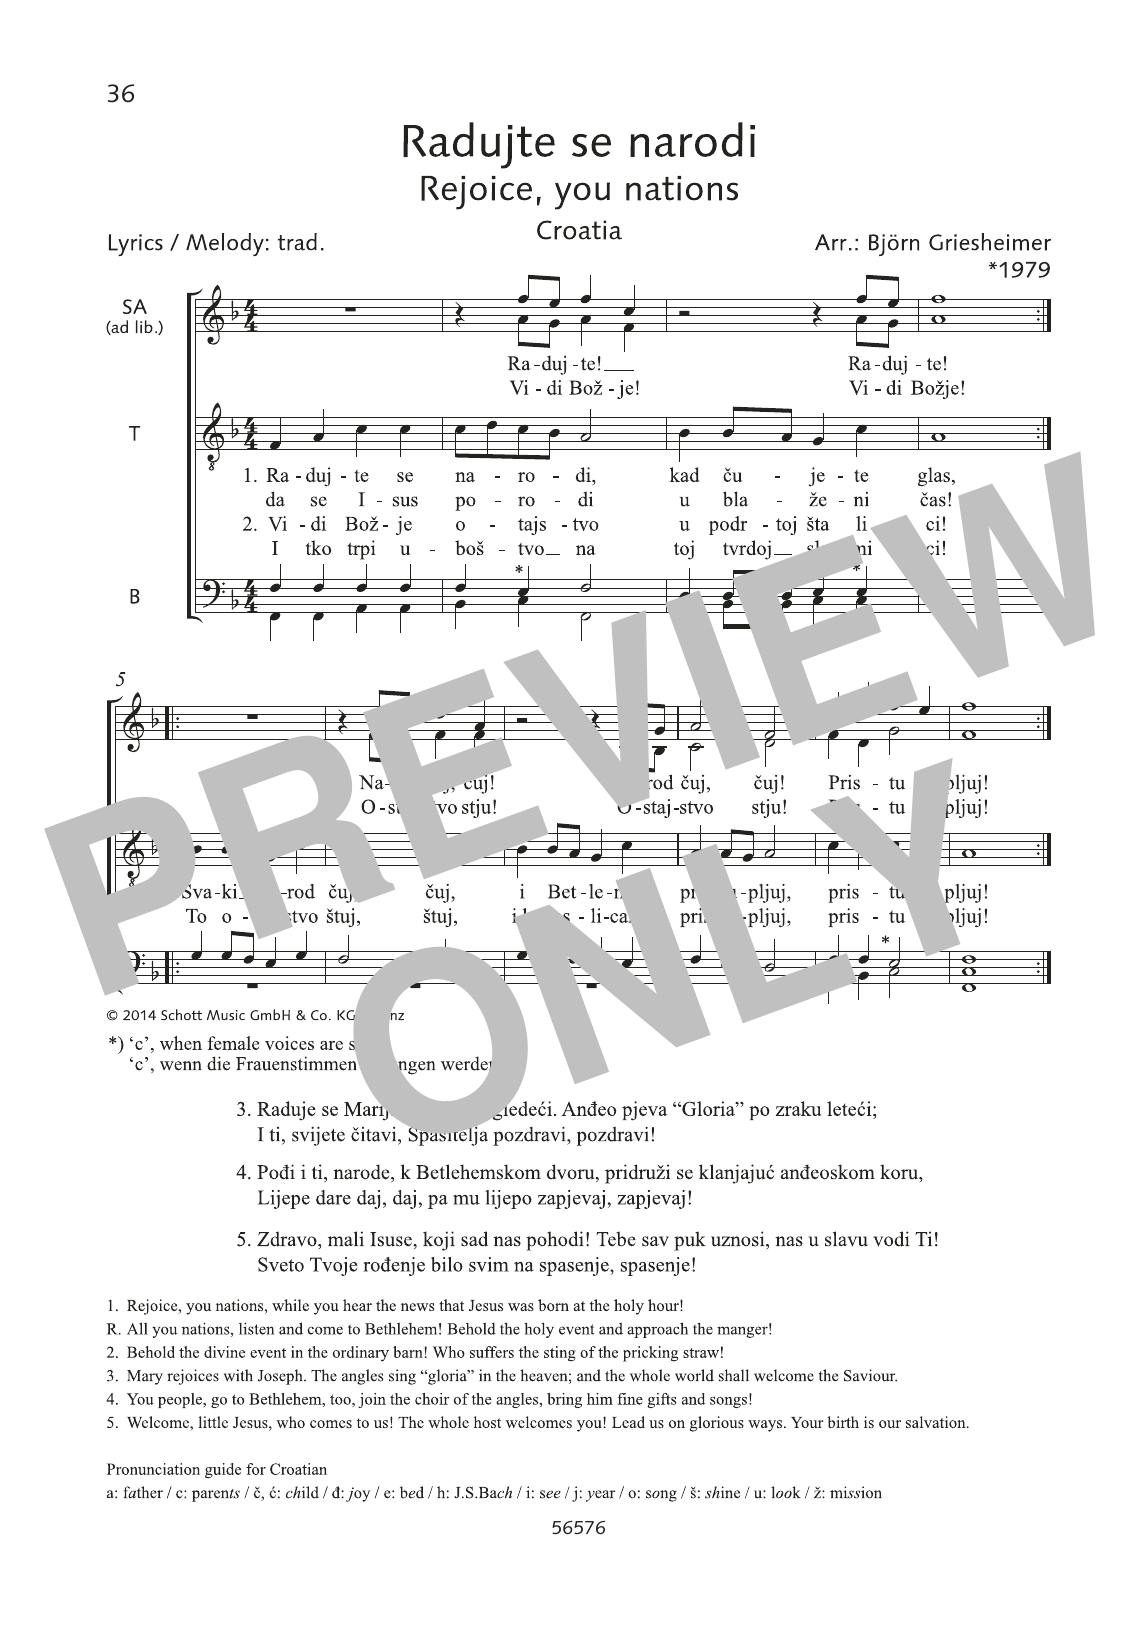 Björn Griesheimer Radujte se narodi Sheet Music Notes & Chords for Choral - Download or Print PDF